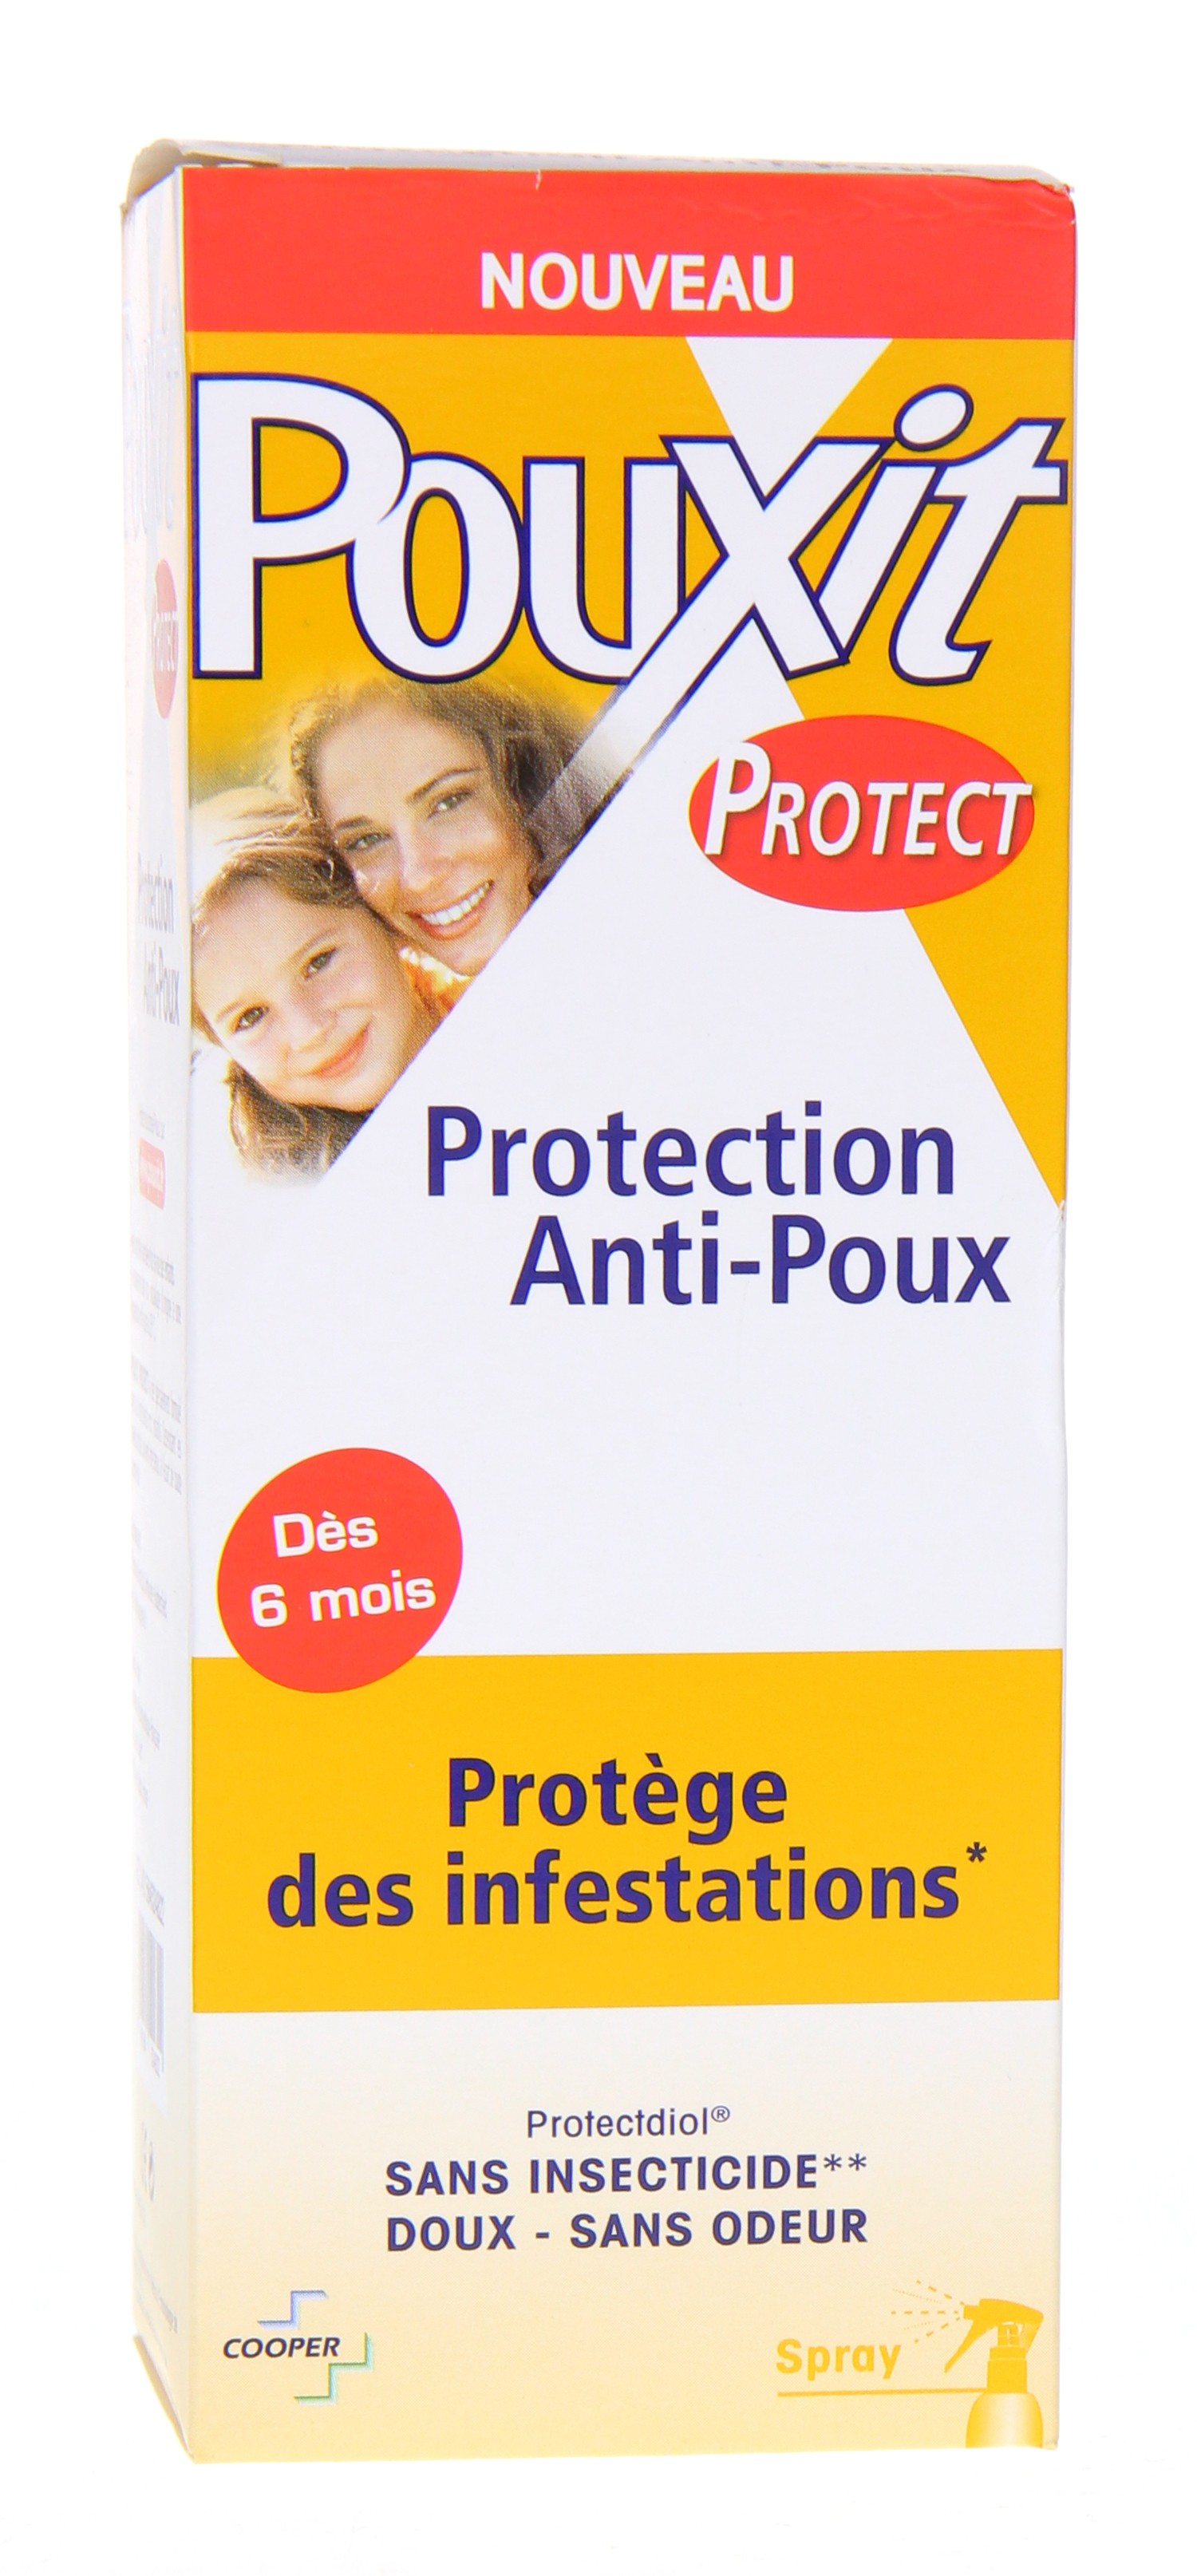 Protection anti-poux